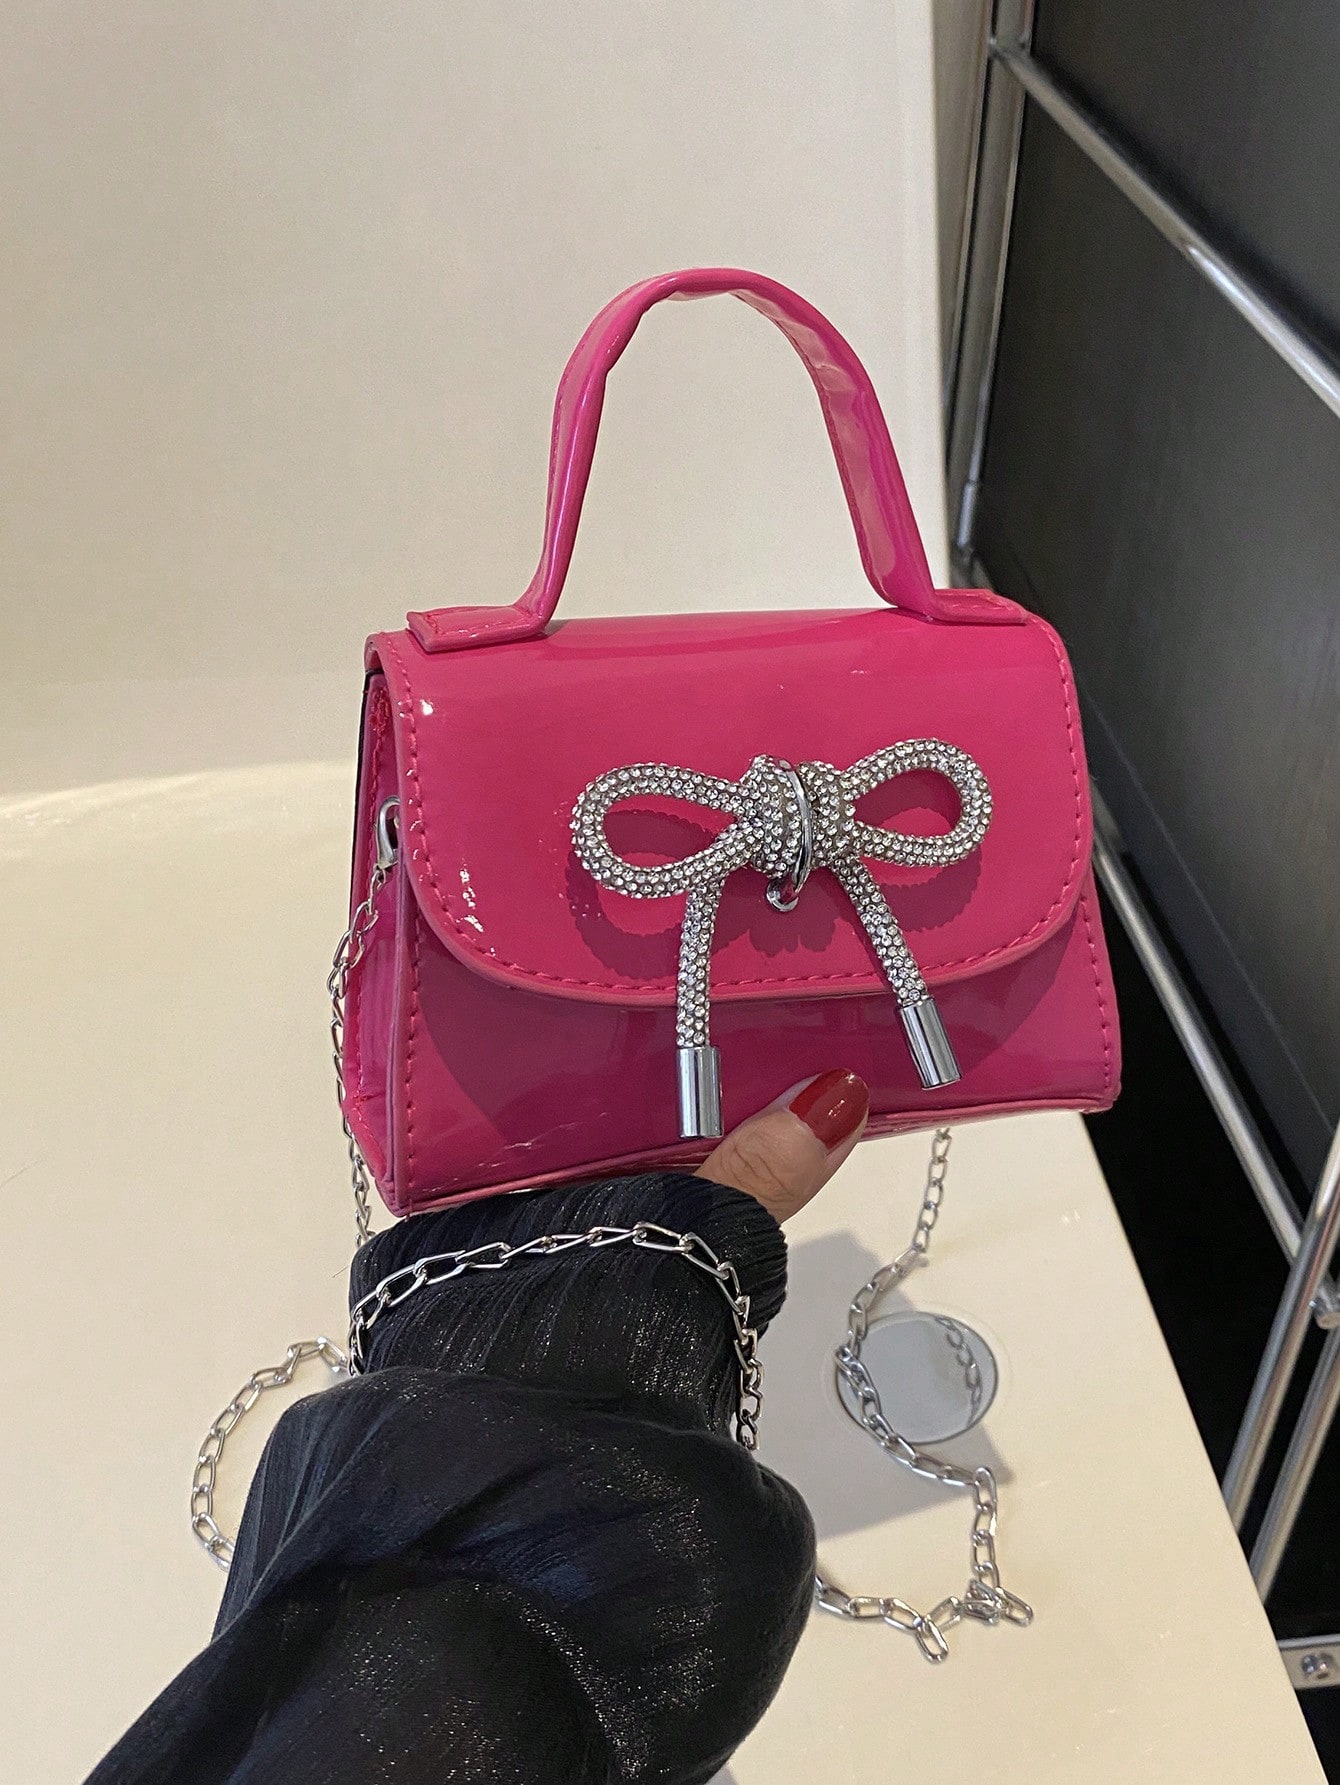 1 шт. Зеркальная мини-сумочка из искусственной кожи с бантом, ярко-розовый